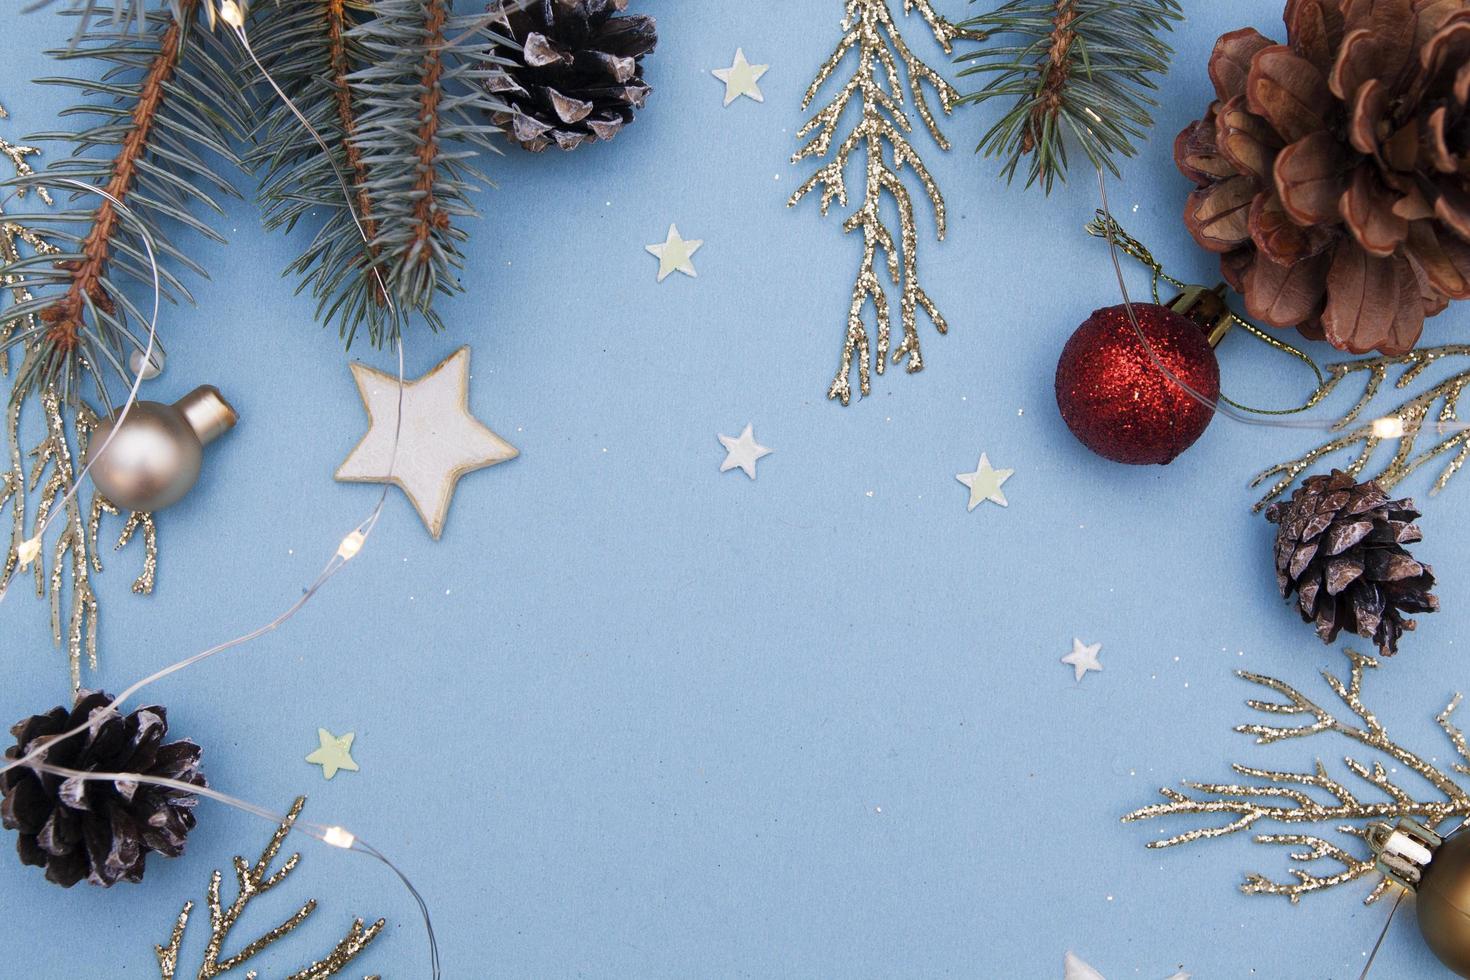 kerst plat leggen. concept foto kerstcadeau, nieuwjaar. dennenboom en gouden twijgen, decoraties, slingers op een blauwe achtergrond. kopieer ruimte